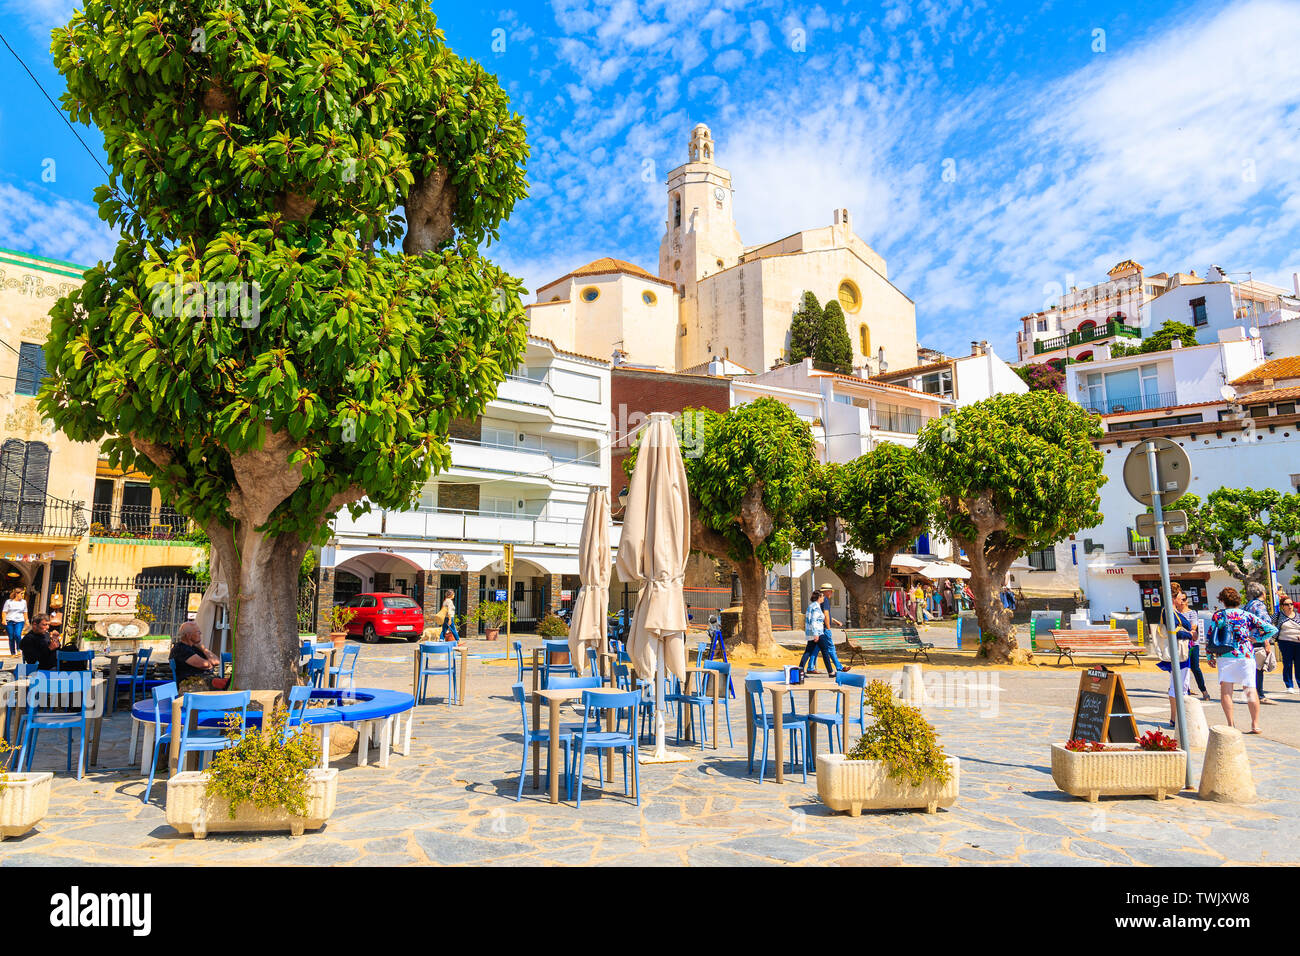 CADAQUES DORF, SPANIEN - Jul 4, 2019: Kirche Platz mit Restaurants in Cadaqués, Costa Brava, Spanien. Stockfoto